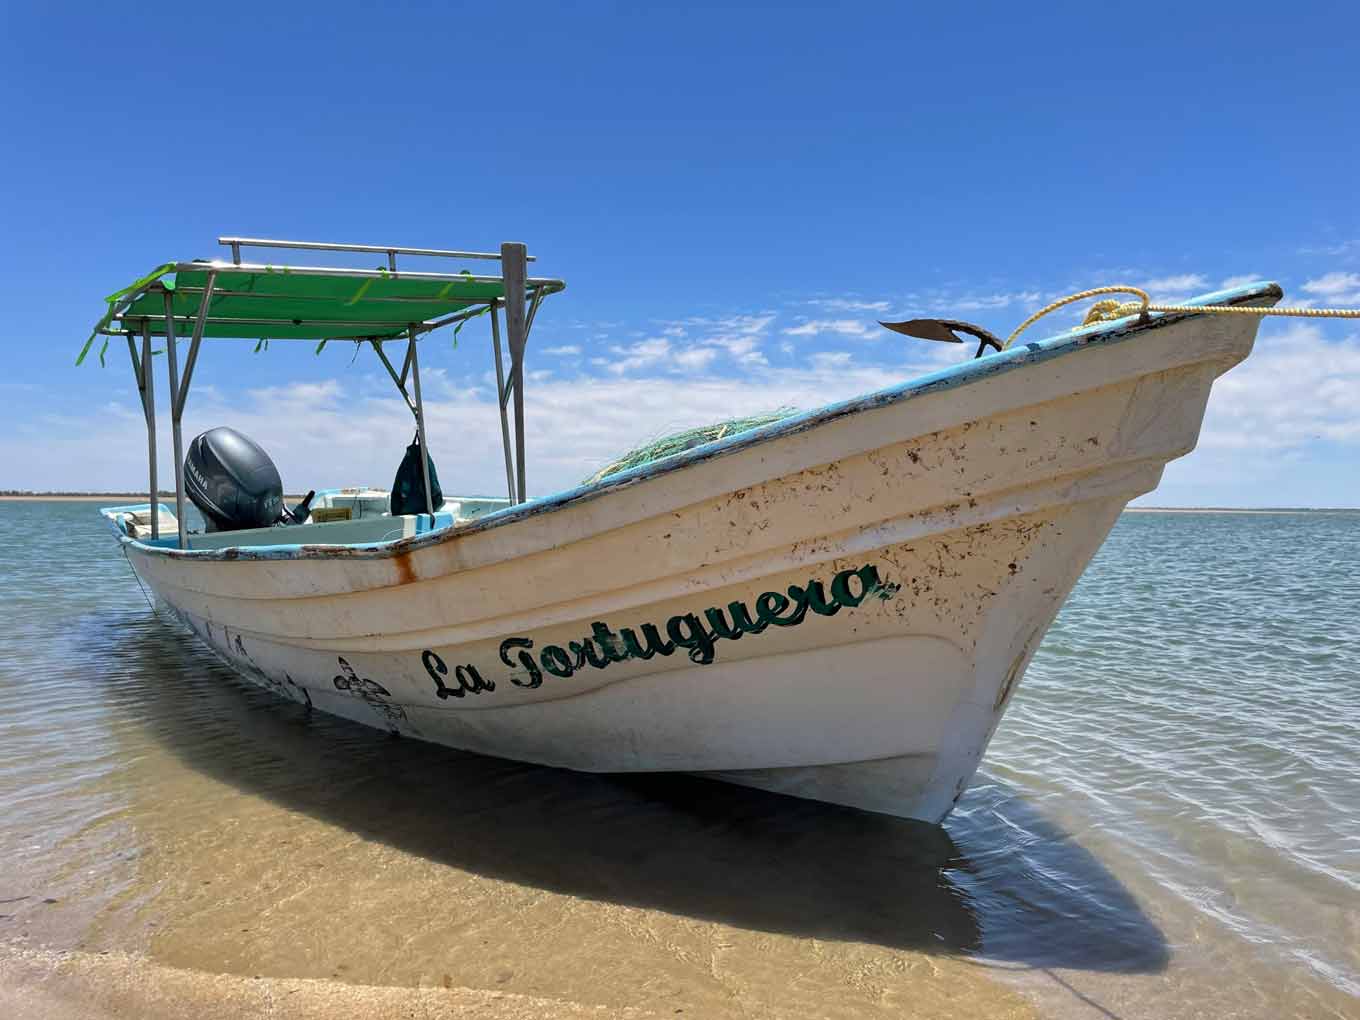 A boat called "La Tortuguera" at the shore